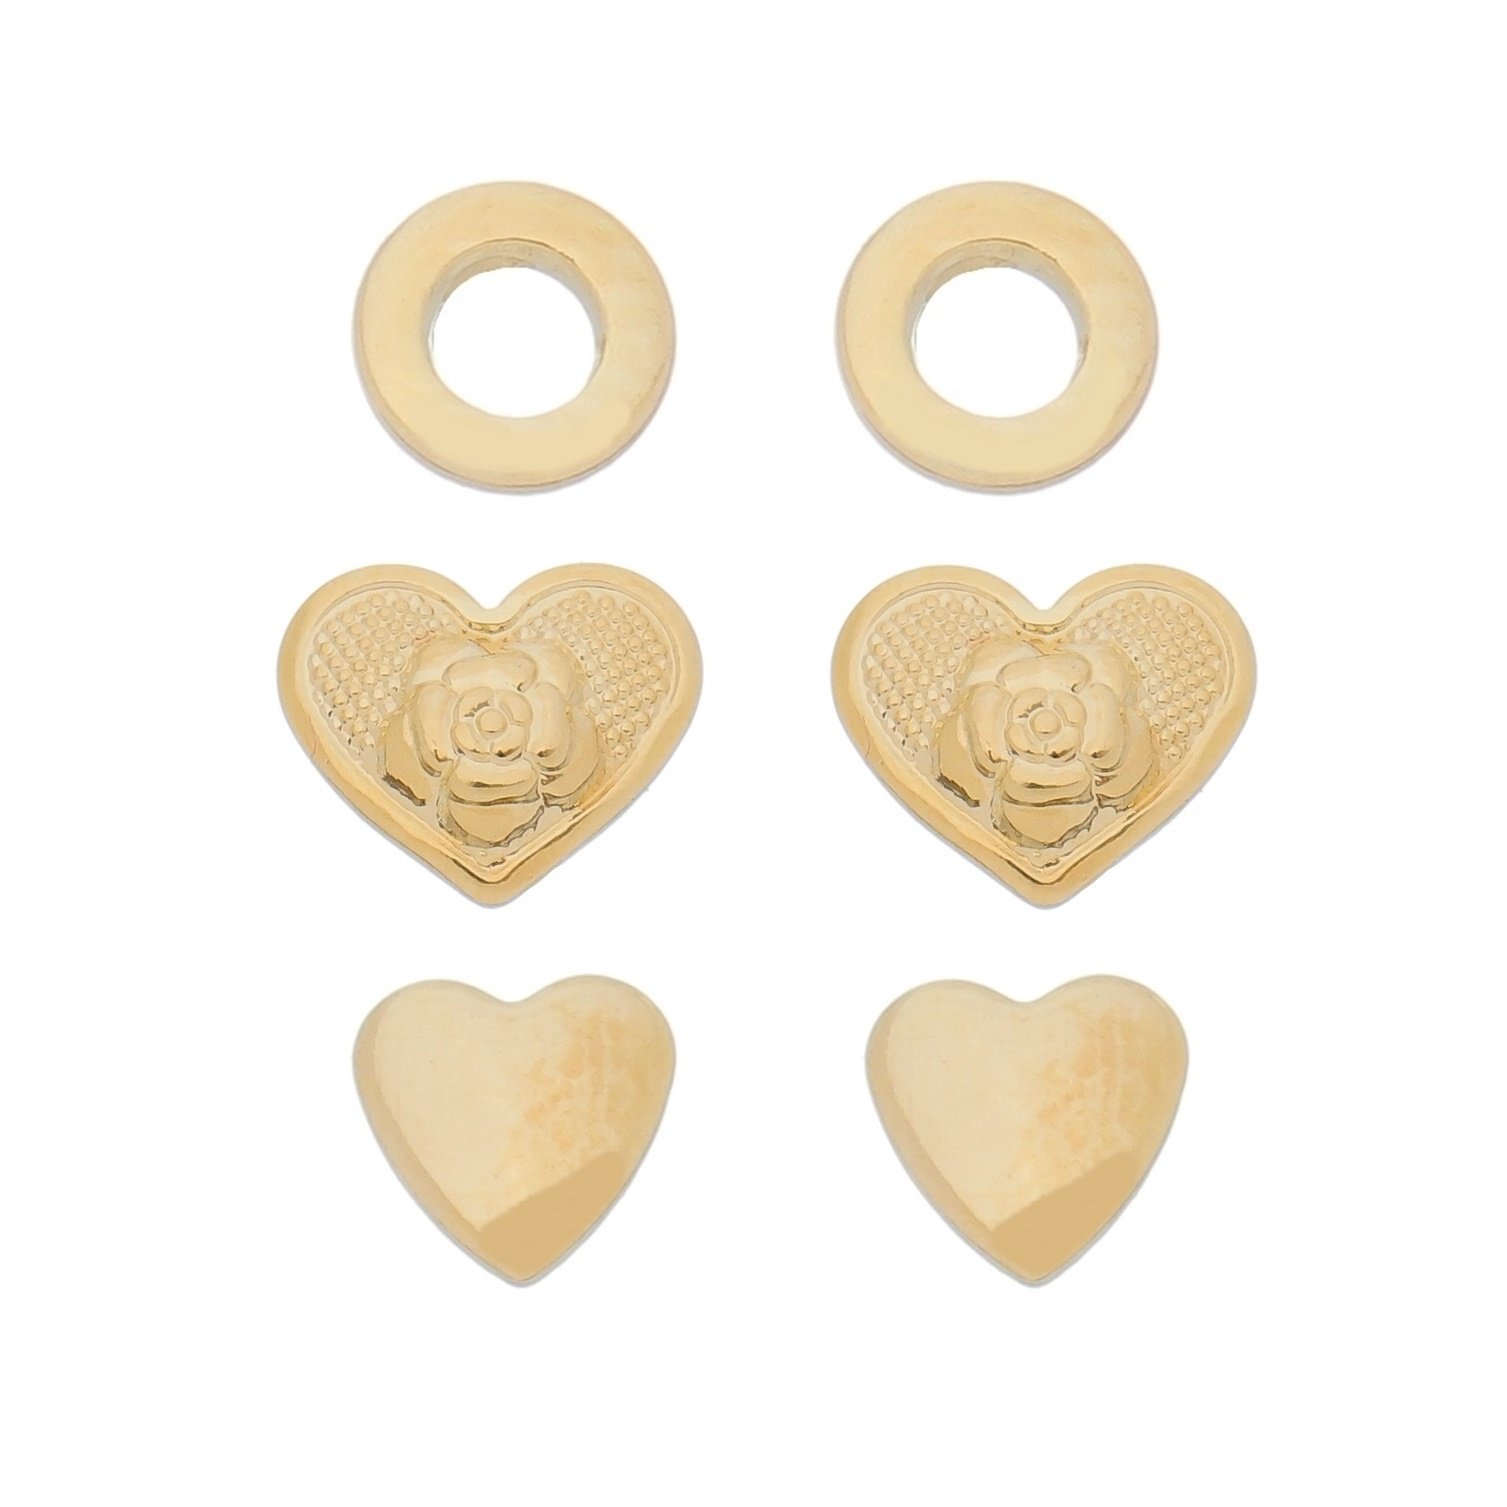 Kit com Três Brincos RIKYFIF Círculo, Coração com Flor e Coração Liso com Banho em Ouro 18K